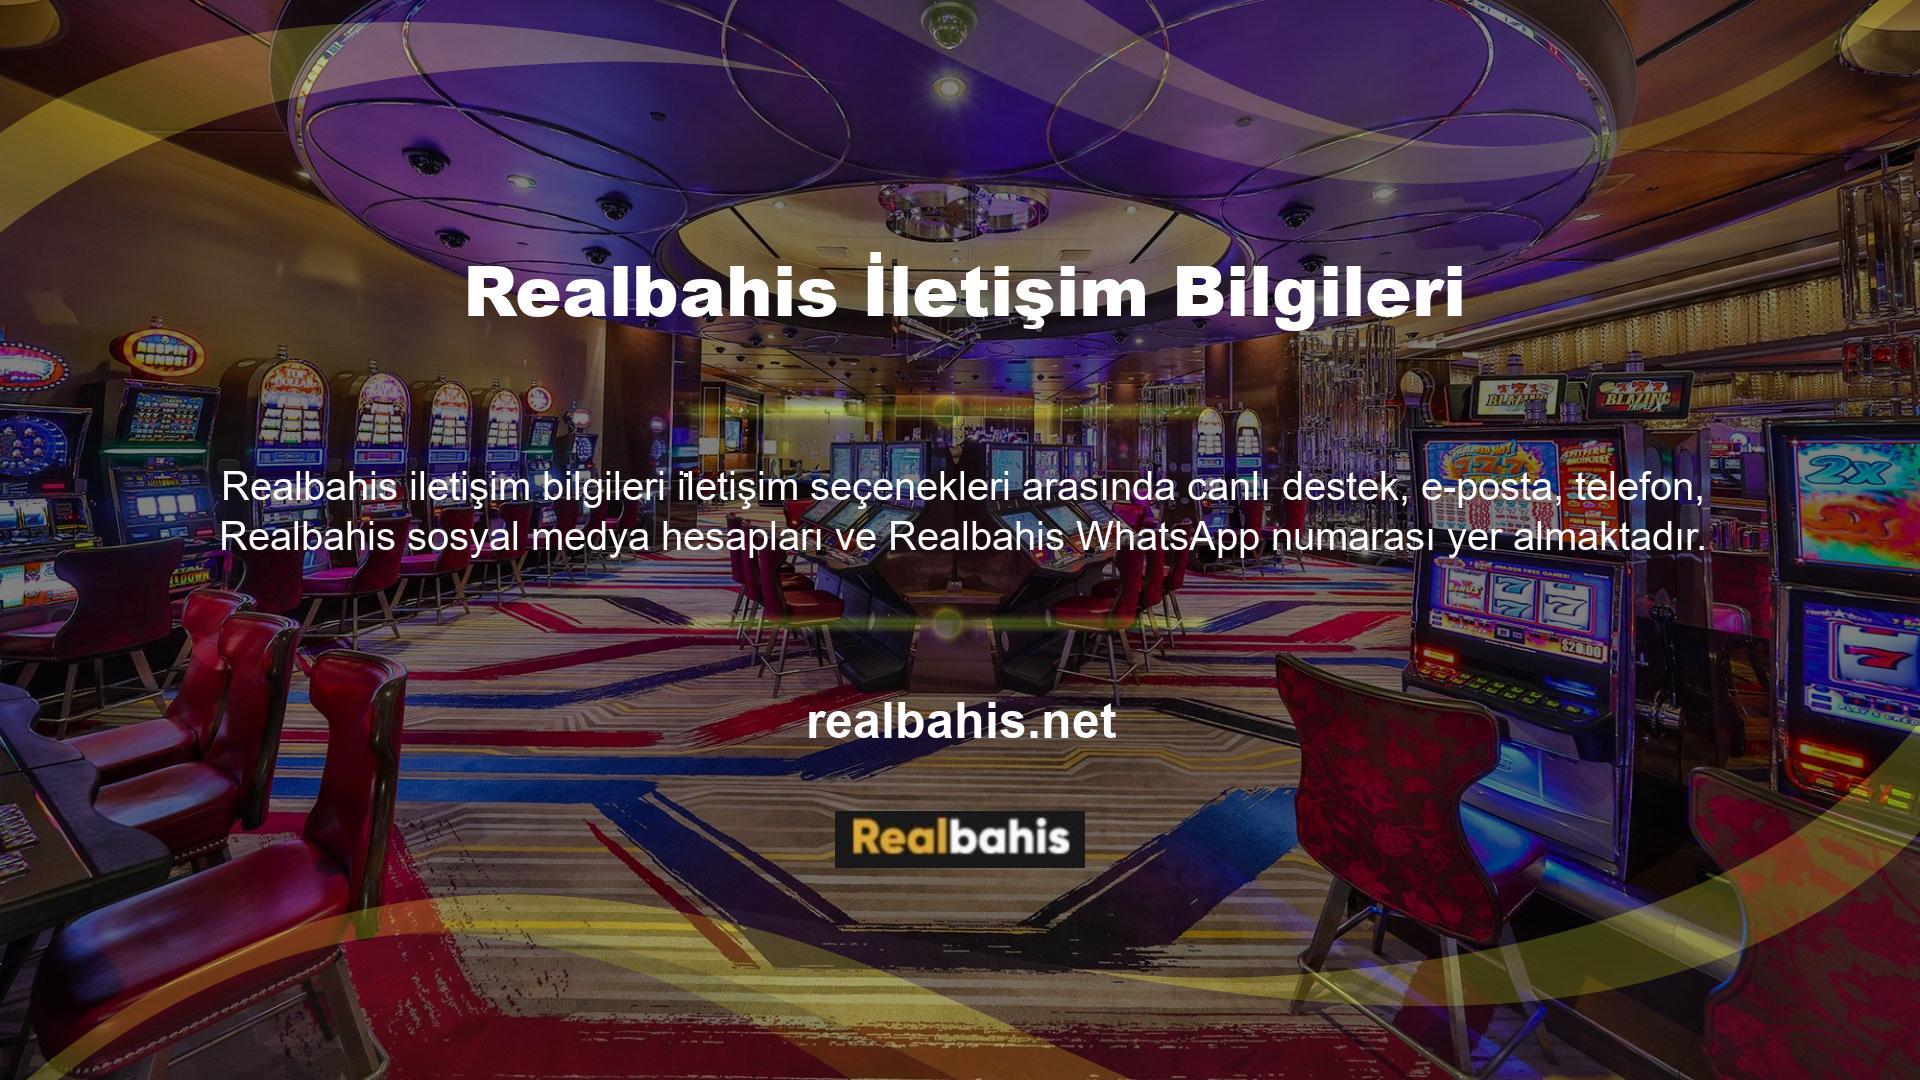 Realbahis, iletişim söz konusu olduğunda her gün ve her zaman kullanıcıları karşılama ruhuyla faaliyet gösteren yurt dışı casino sitelerine işaret ediyor